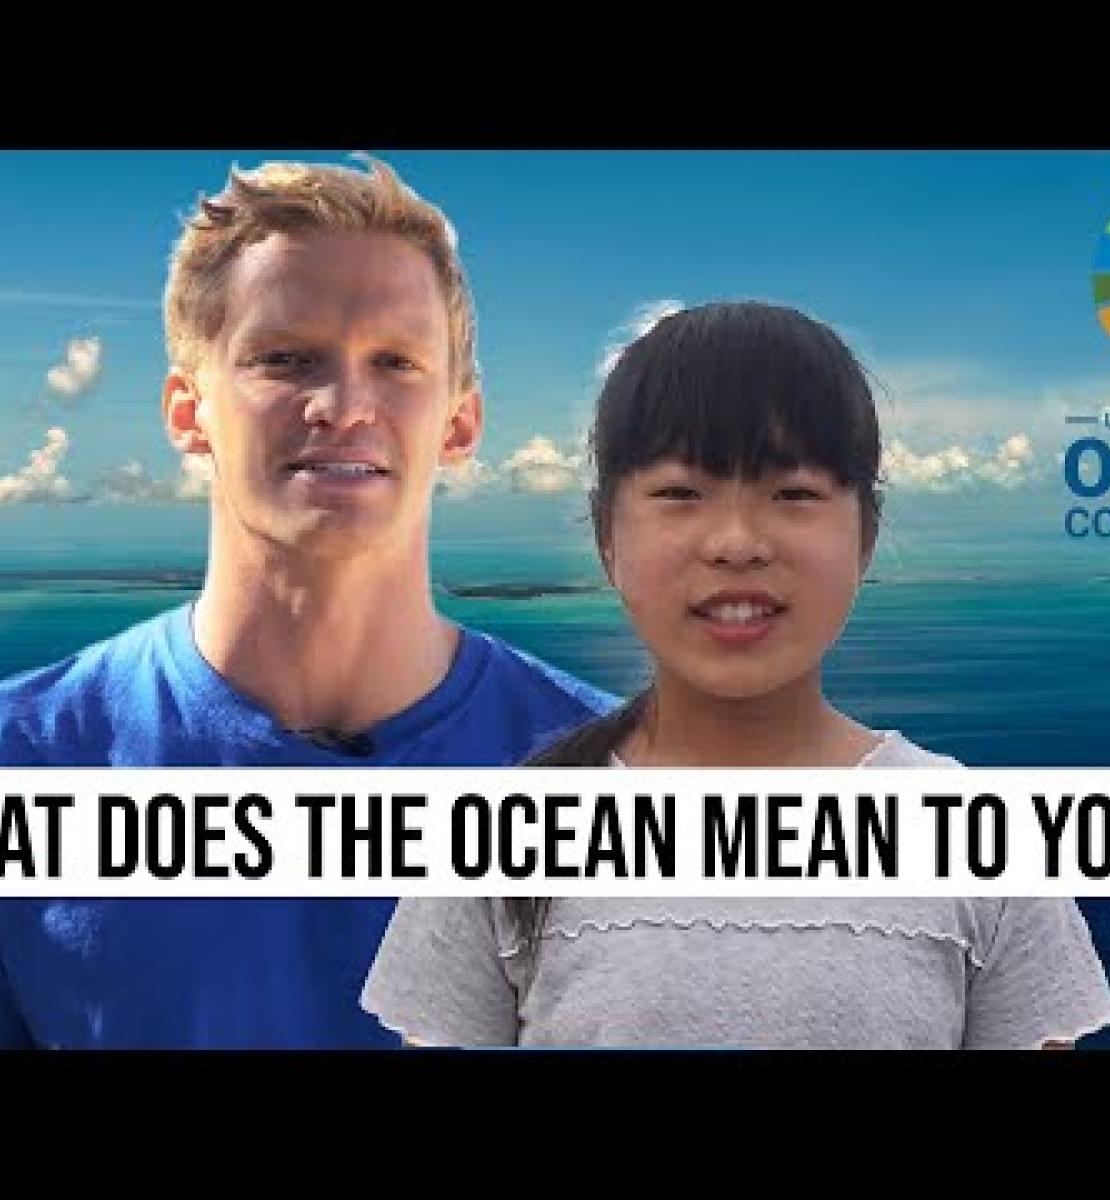 Voici pourquoi les océans sont si importants pour Cody Simpson et pour les peuples du monde entier